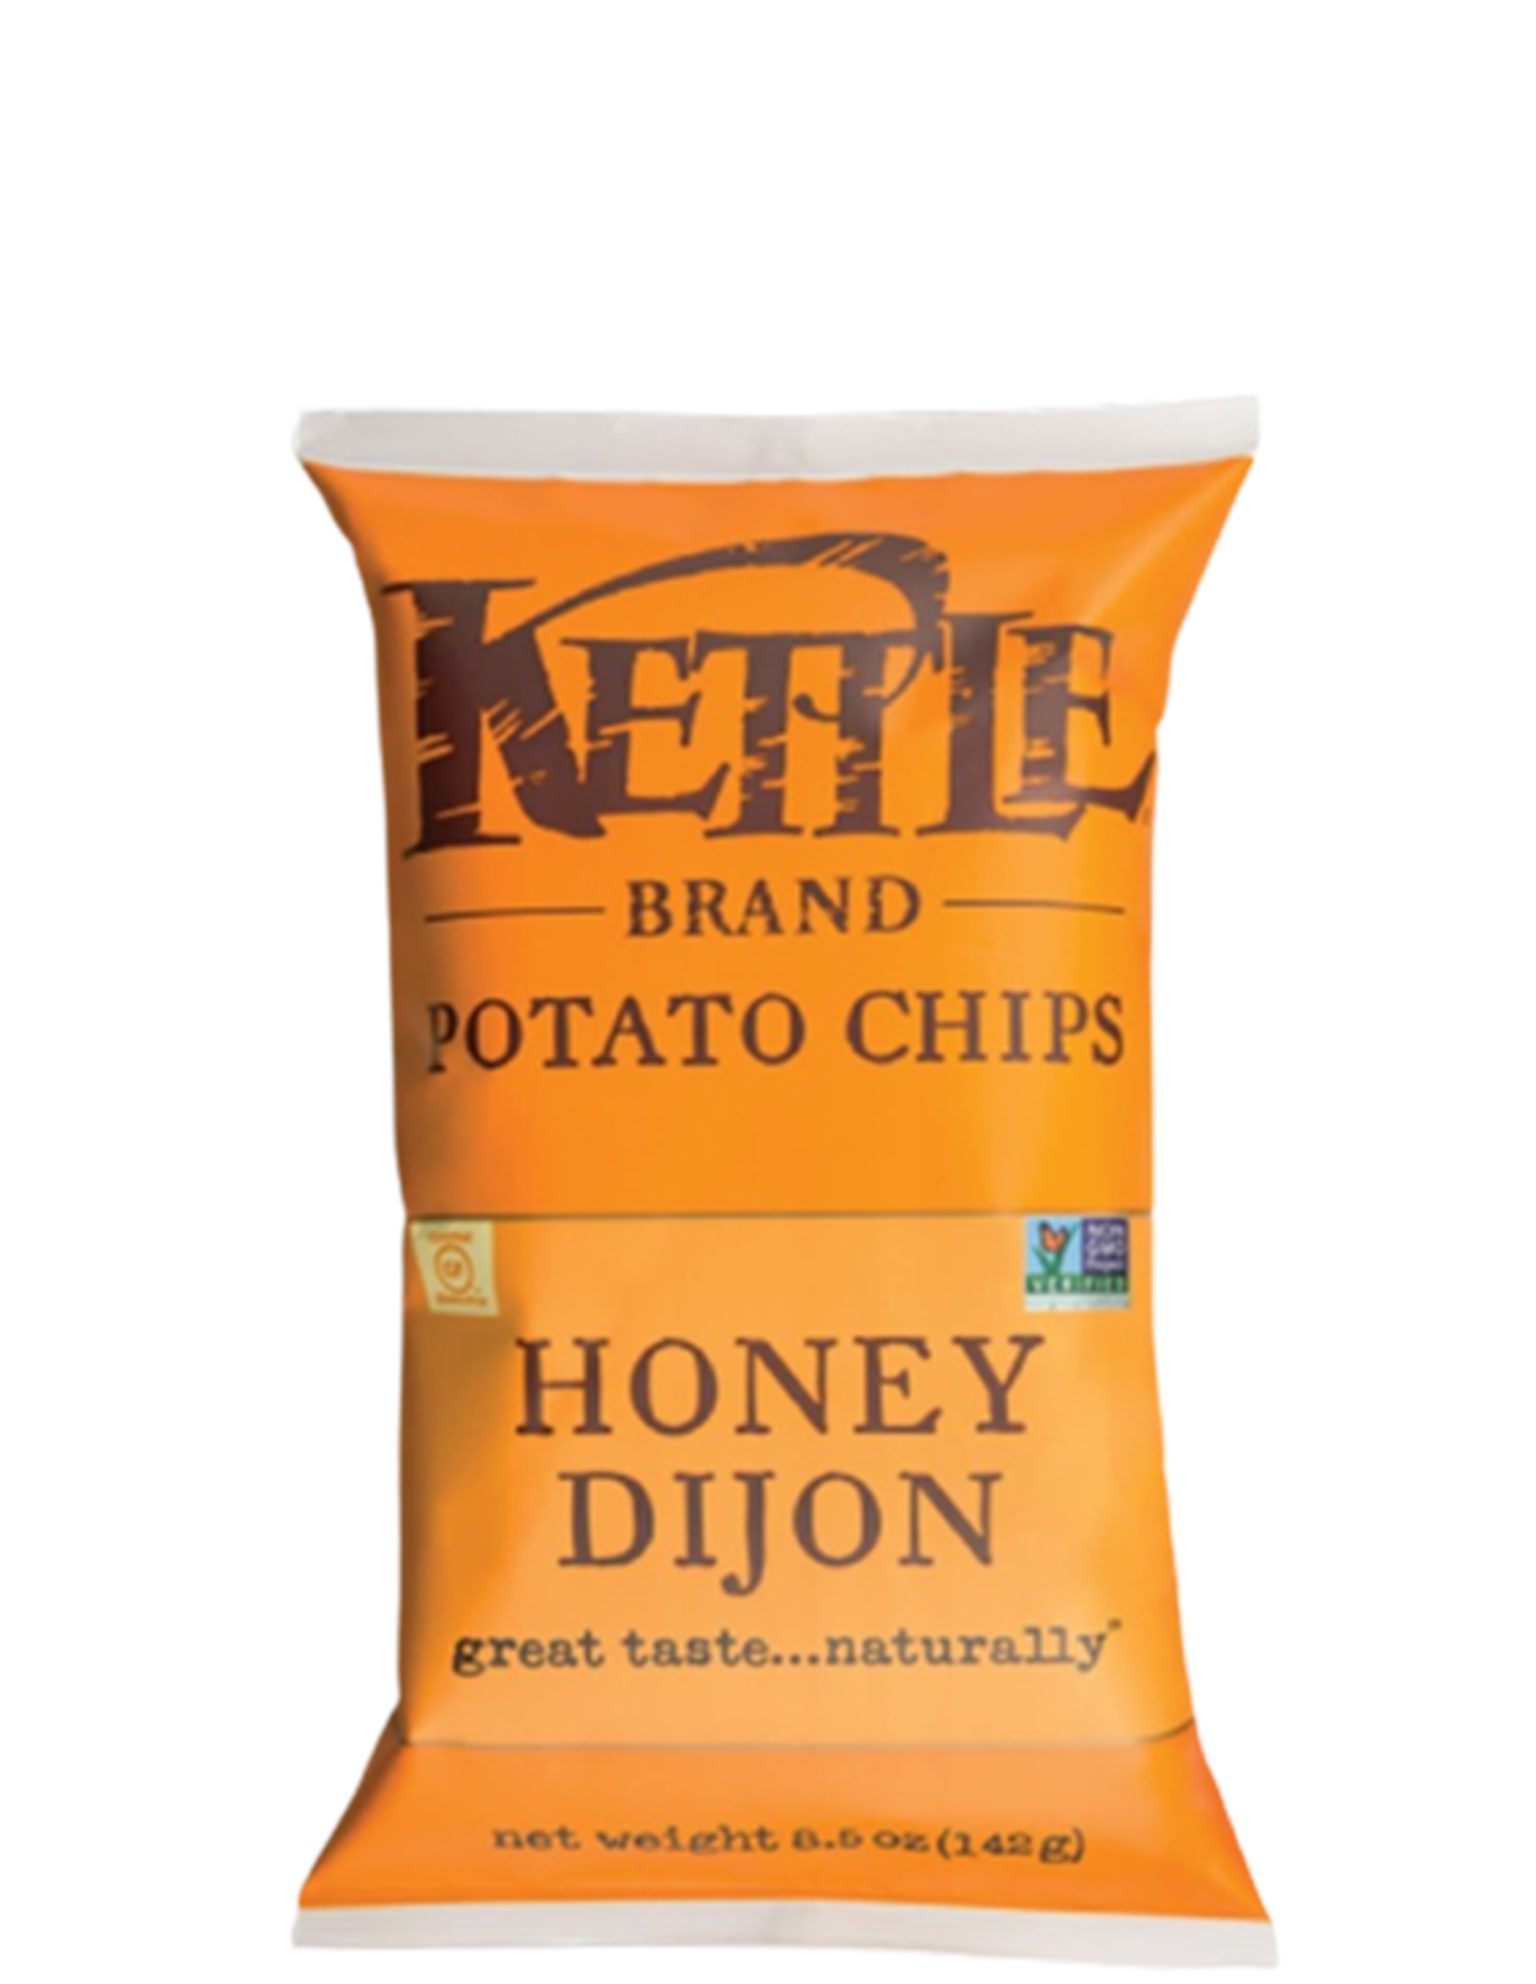 Kettle Honey Dijon 141 g main image